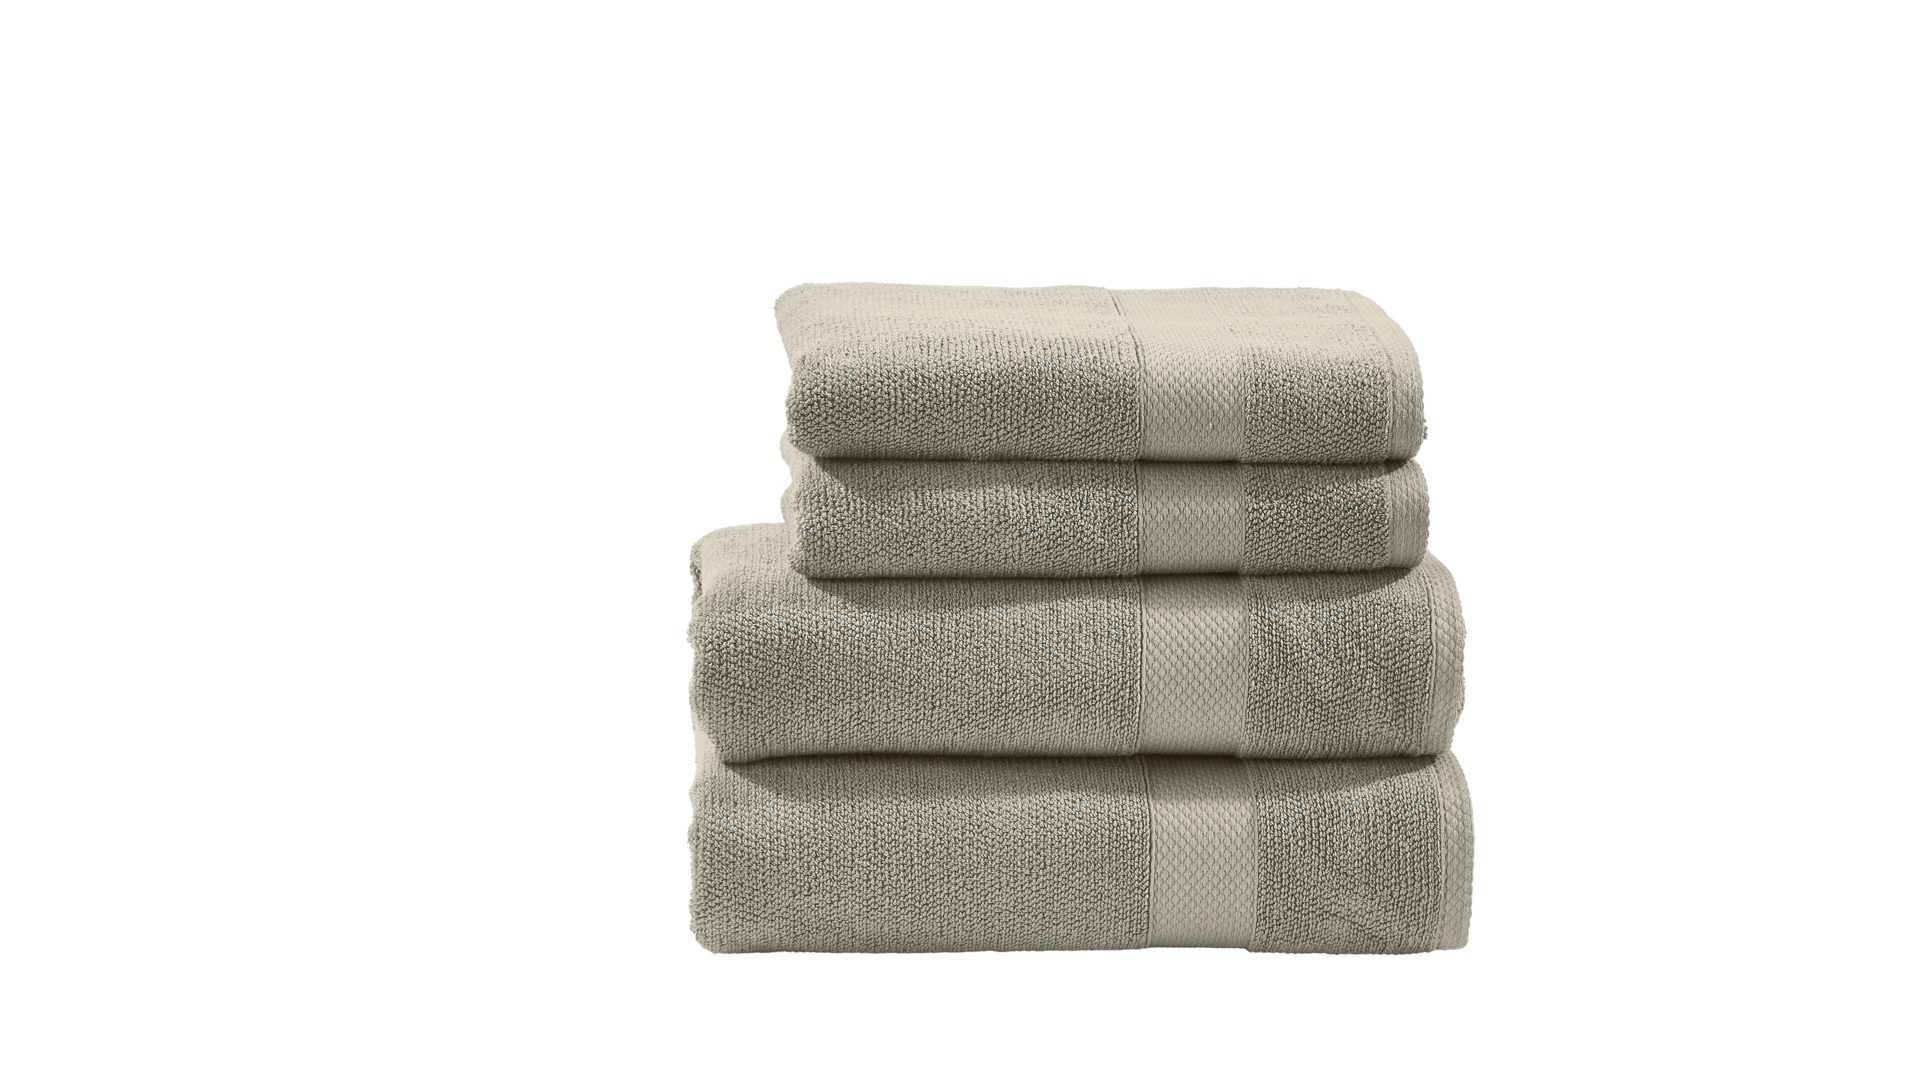 Handtuch-Set Done® be different aus Stoff in Beige DONE® Handtuch-Set Deluxe für Ihre Heimtextilien taupefarbene Baumwolle – vierteilig